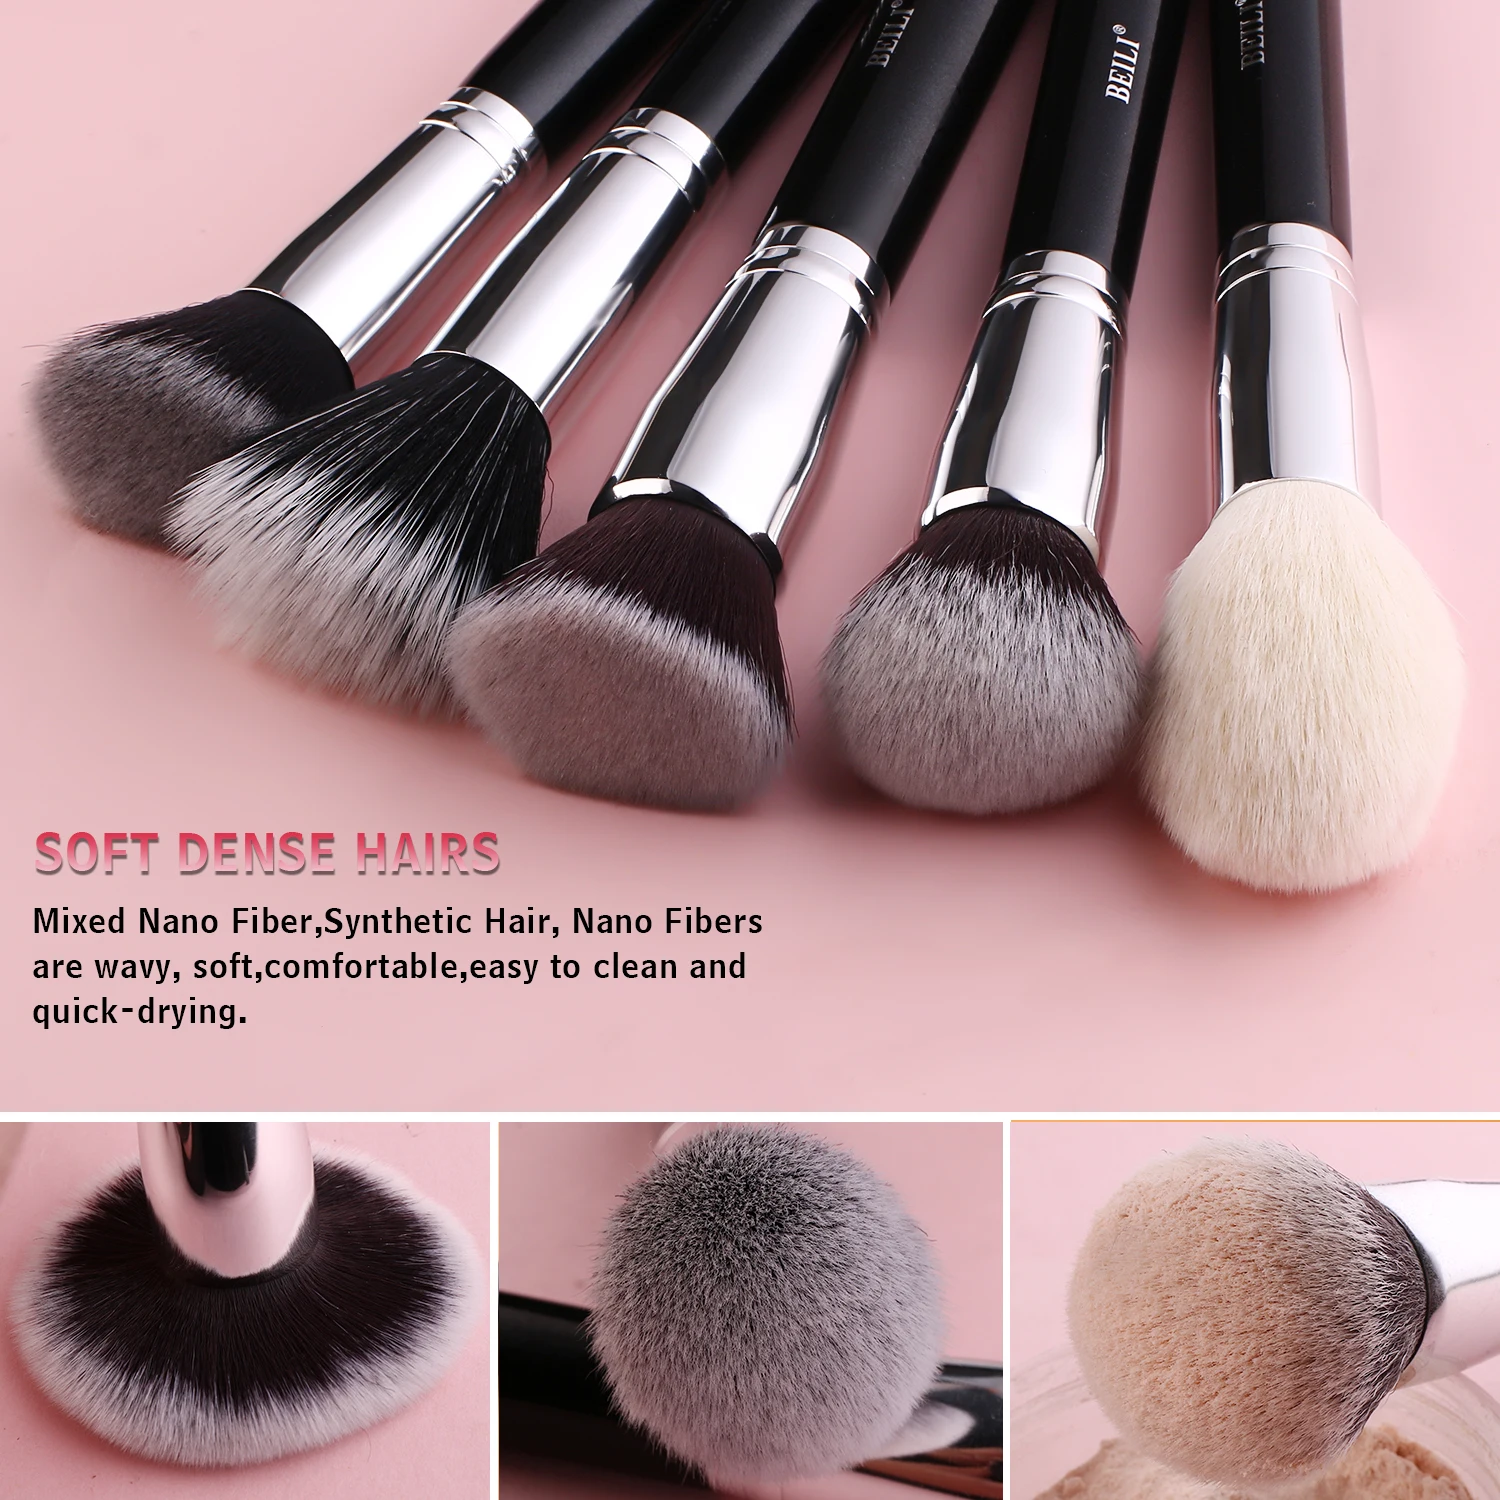 BEILI Juego de 28 brochas de maquillaje profesional de cabra sintética  Kabuki para base, brocha de mezcla de polvo facial, rubor, correctores,  sombras